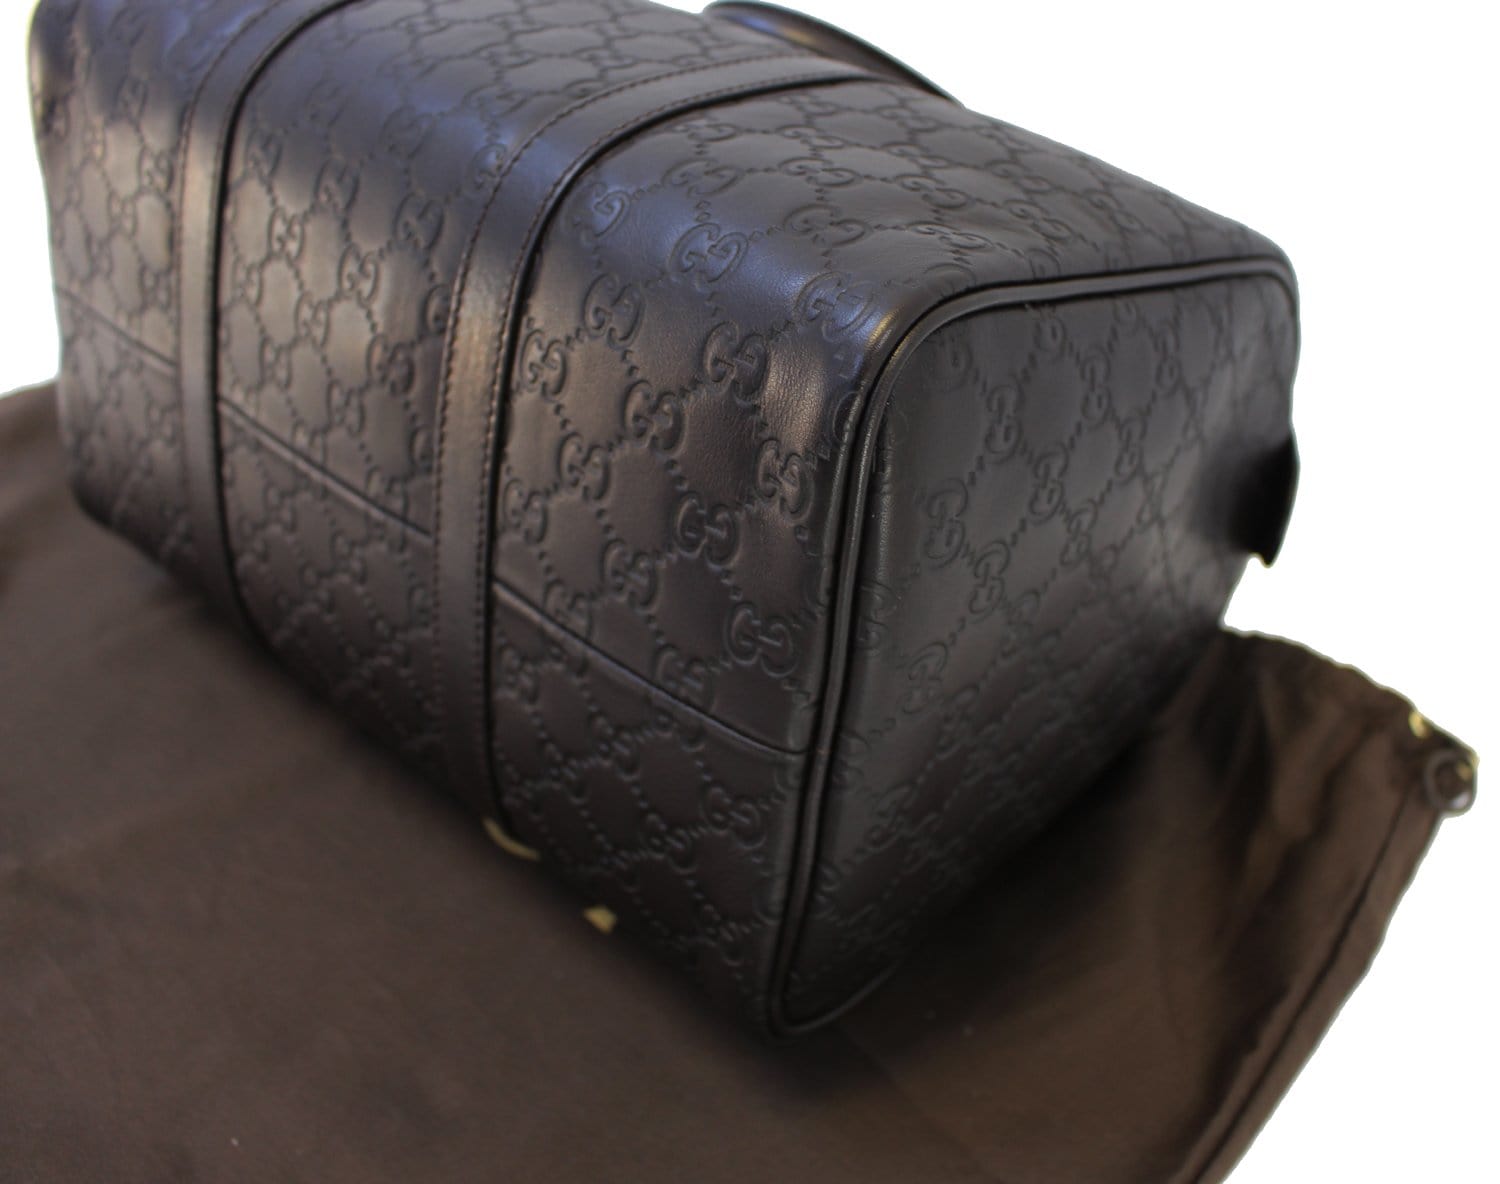 Gucci Medium Black Leather Handbag Boston Microguccissima w/Det Strap more  Color